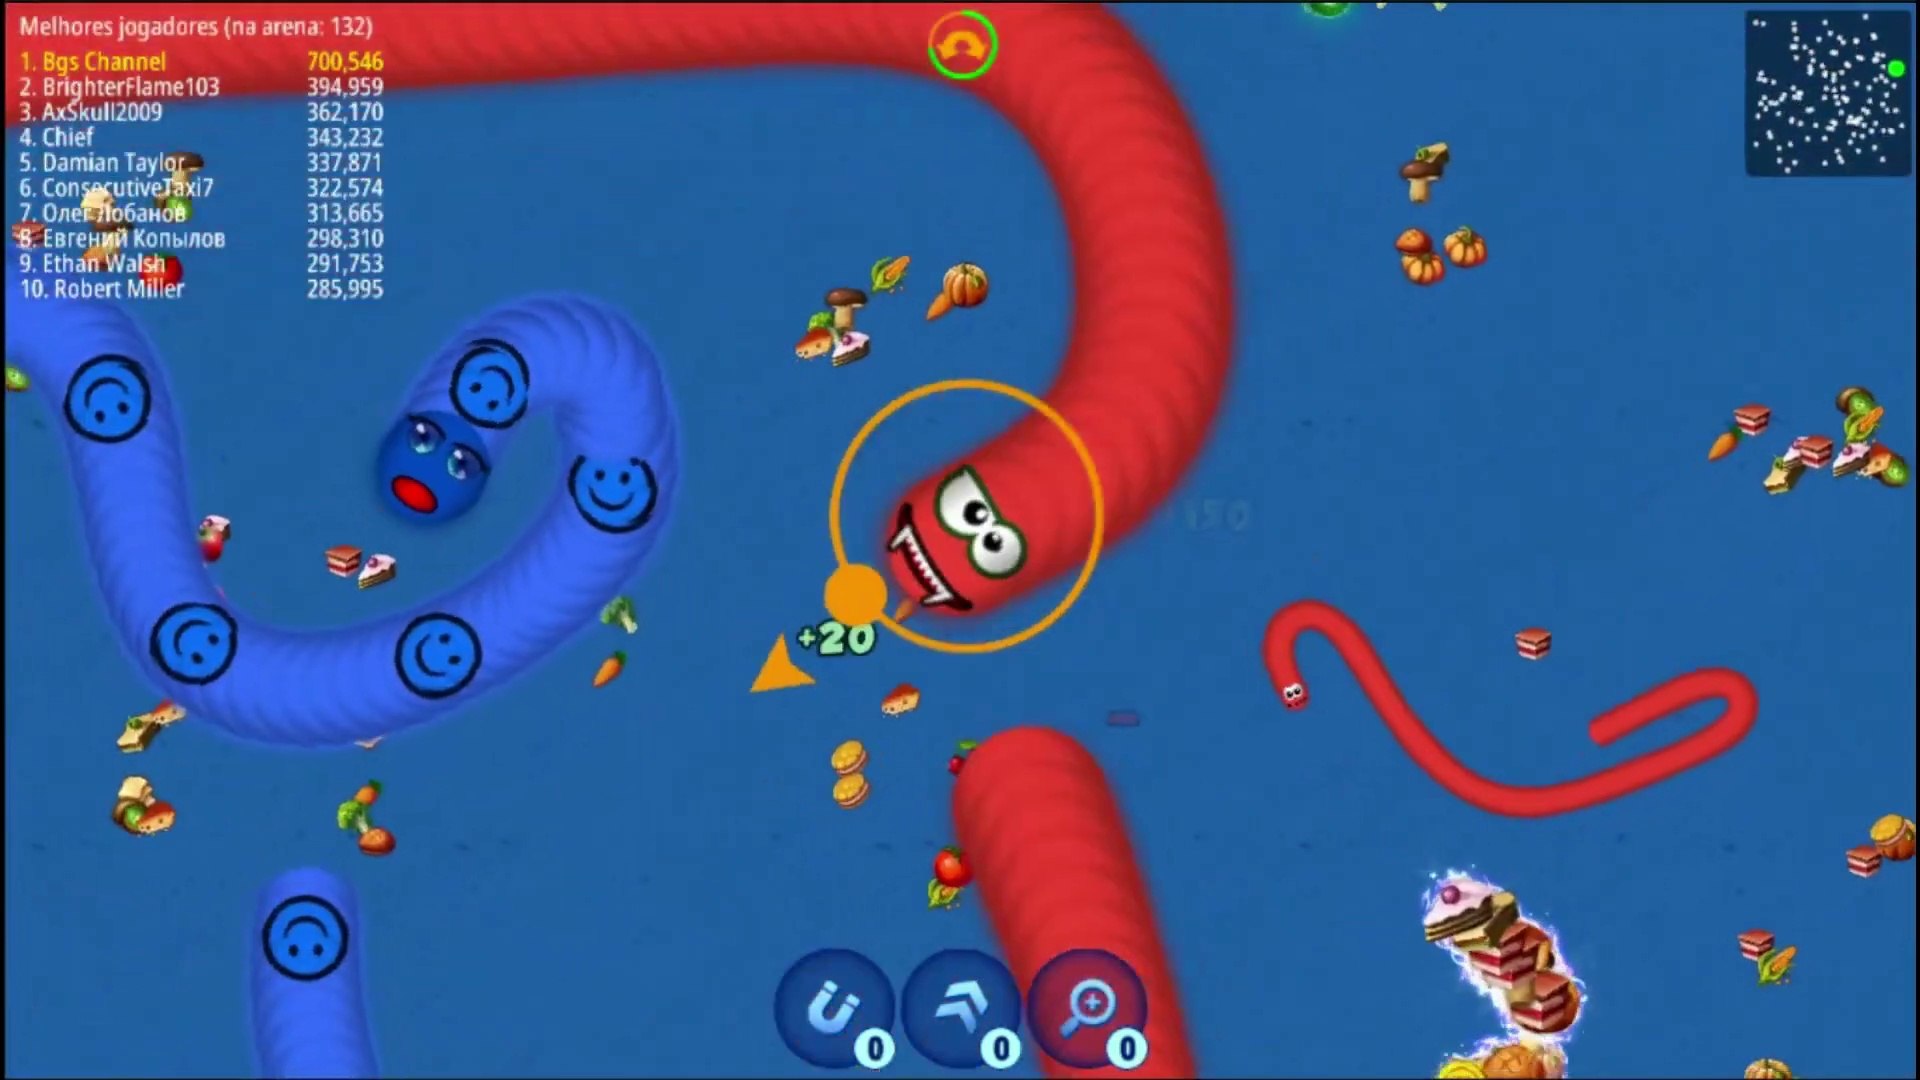 WORMS ZONE GAMEPLAY VIDEO 3 - NOVO RECORDE !    Worms Zone .io